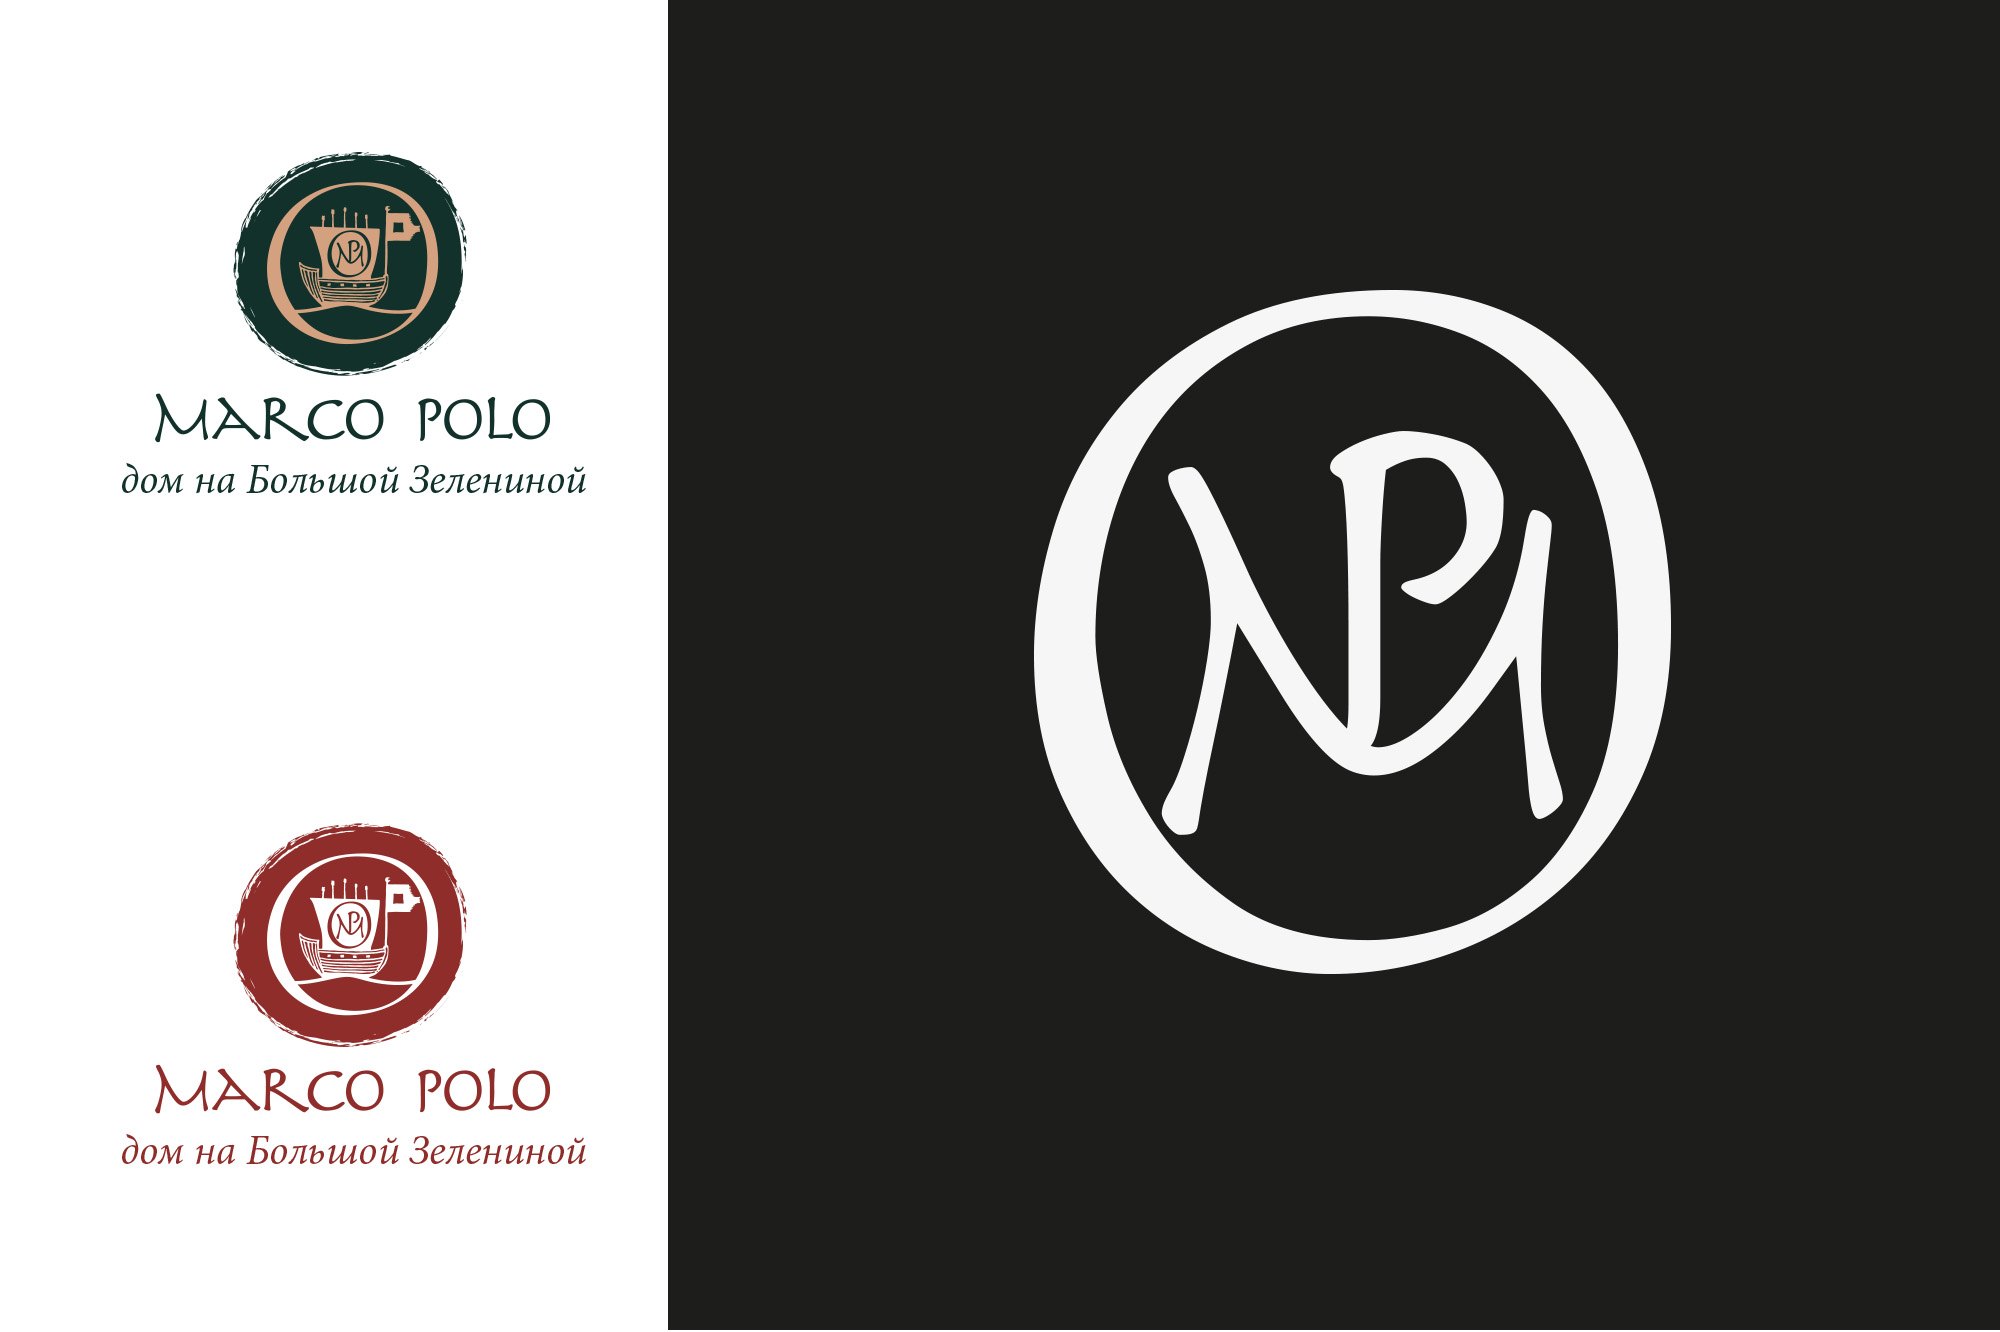 Логотип жилого дома «Марко Поло». Цвето-графическое решение